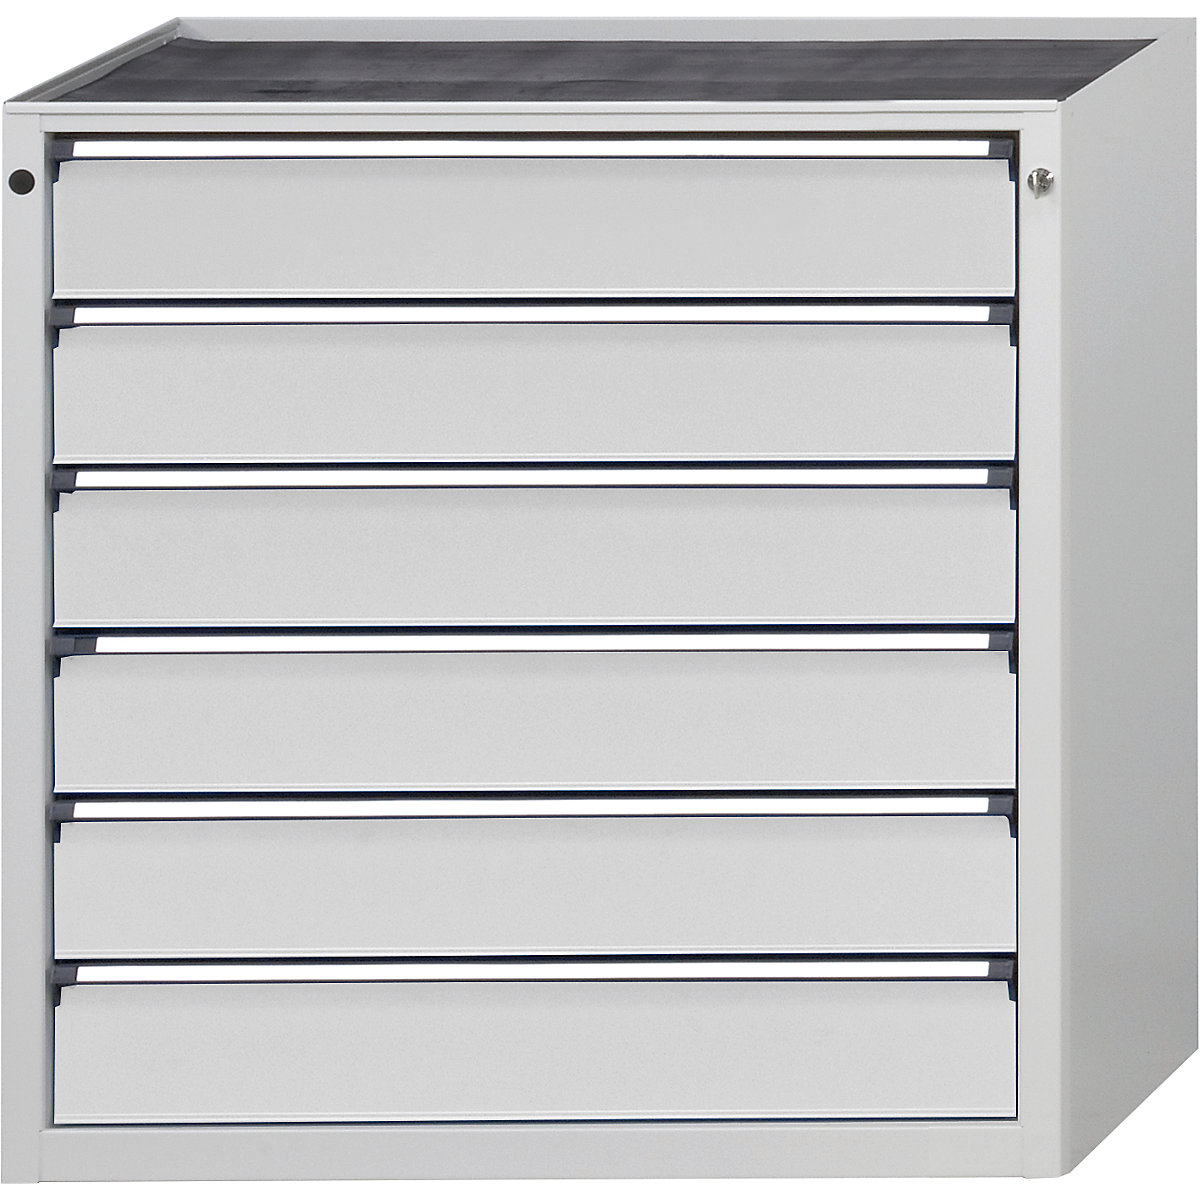 ANKE – Armoire à tiroirs, l x p 910 x 675 mm, 6 tiroirs, hauteur 980 mm, façade gris clair